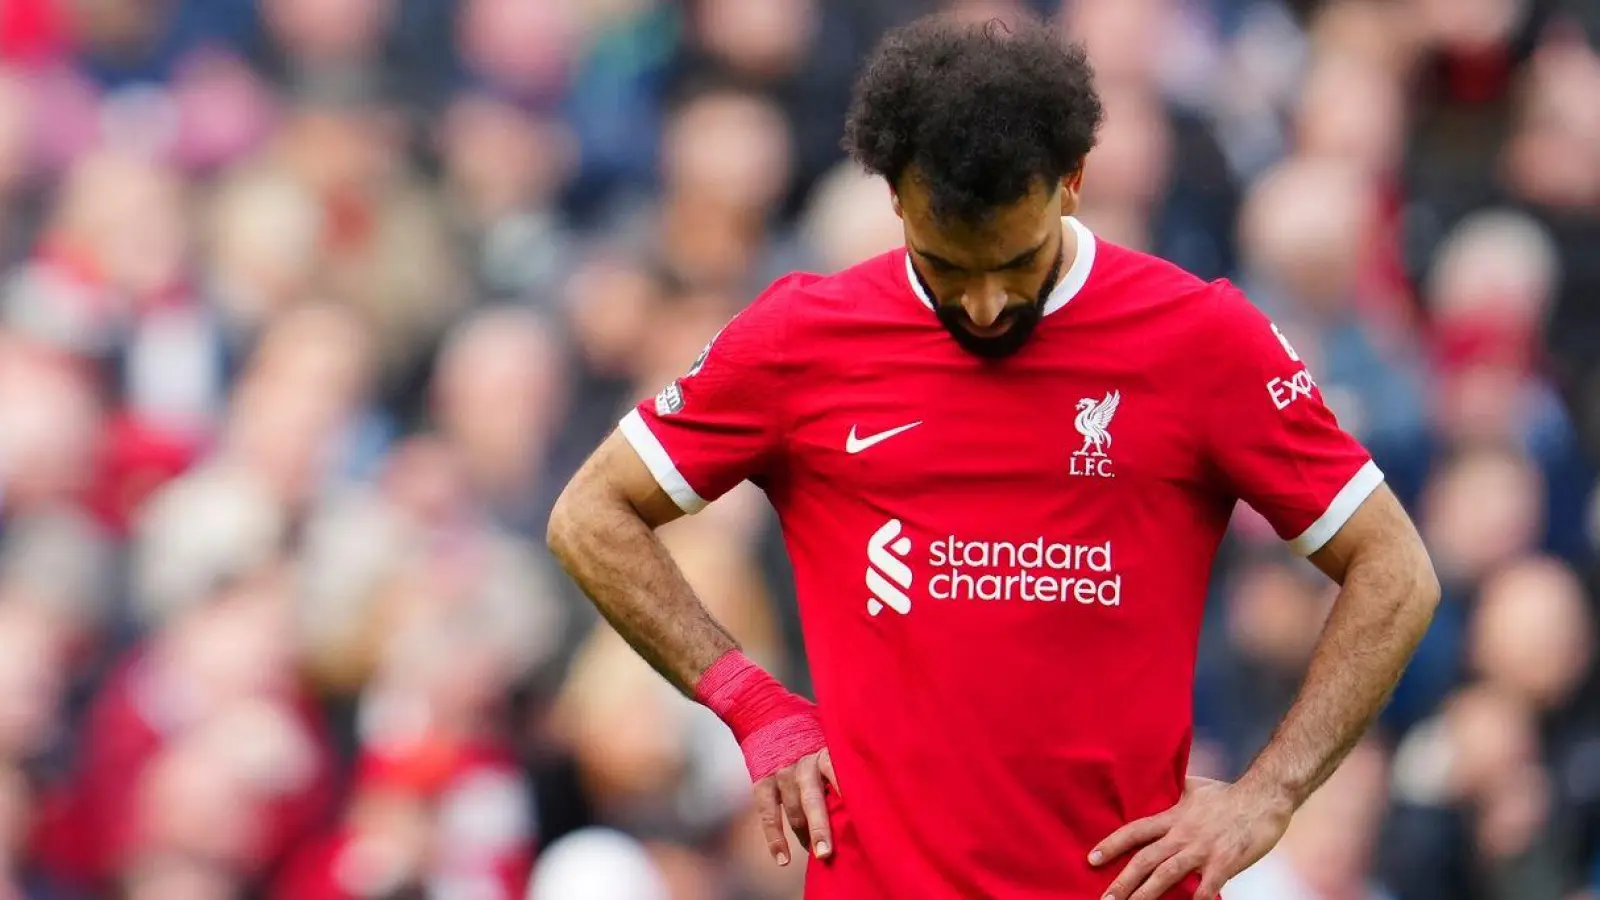 Die Liverpooler um Mohamed Salah kassierten gegen Crystal Palace eine überraschende Heim-Niederlage. (Foto: Jon Super/AP/dpa)